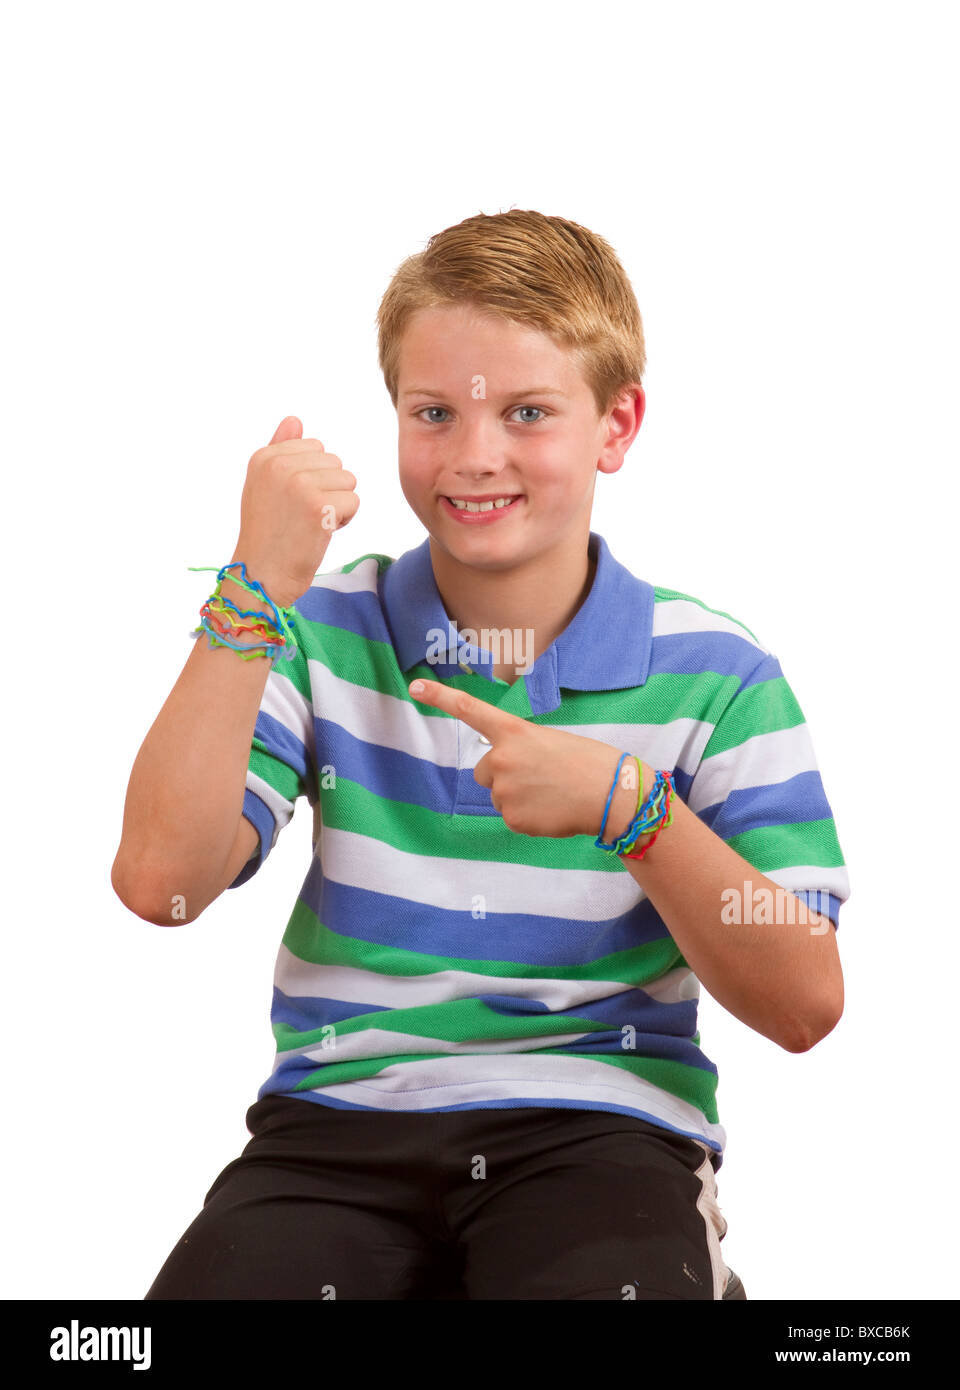 Hier ist ein neun Jahres altes Kind albern geformte Gummiband Armbänder tragen. Stockfoto